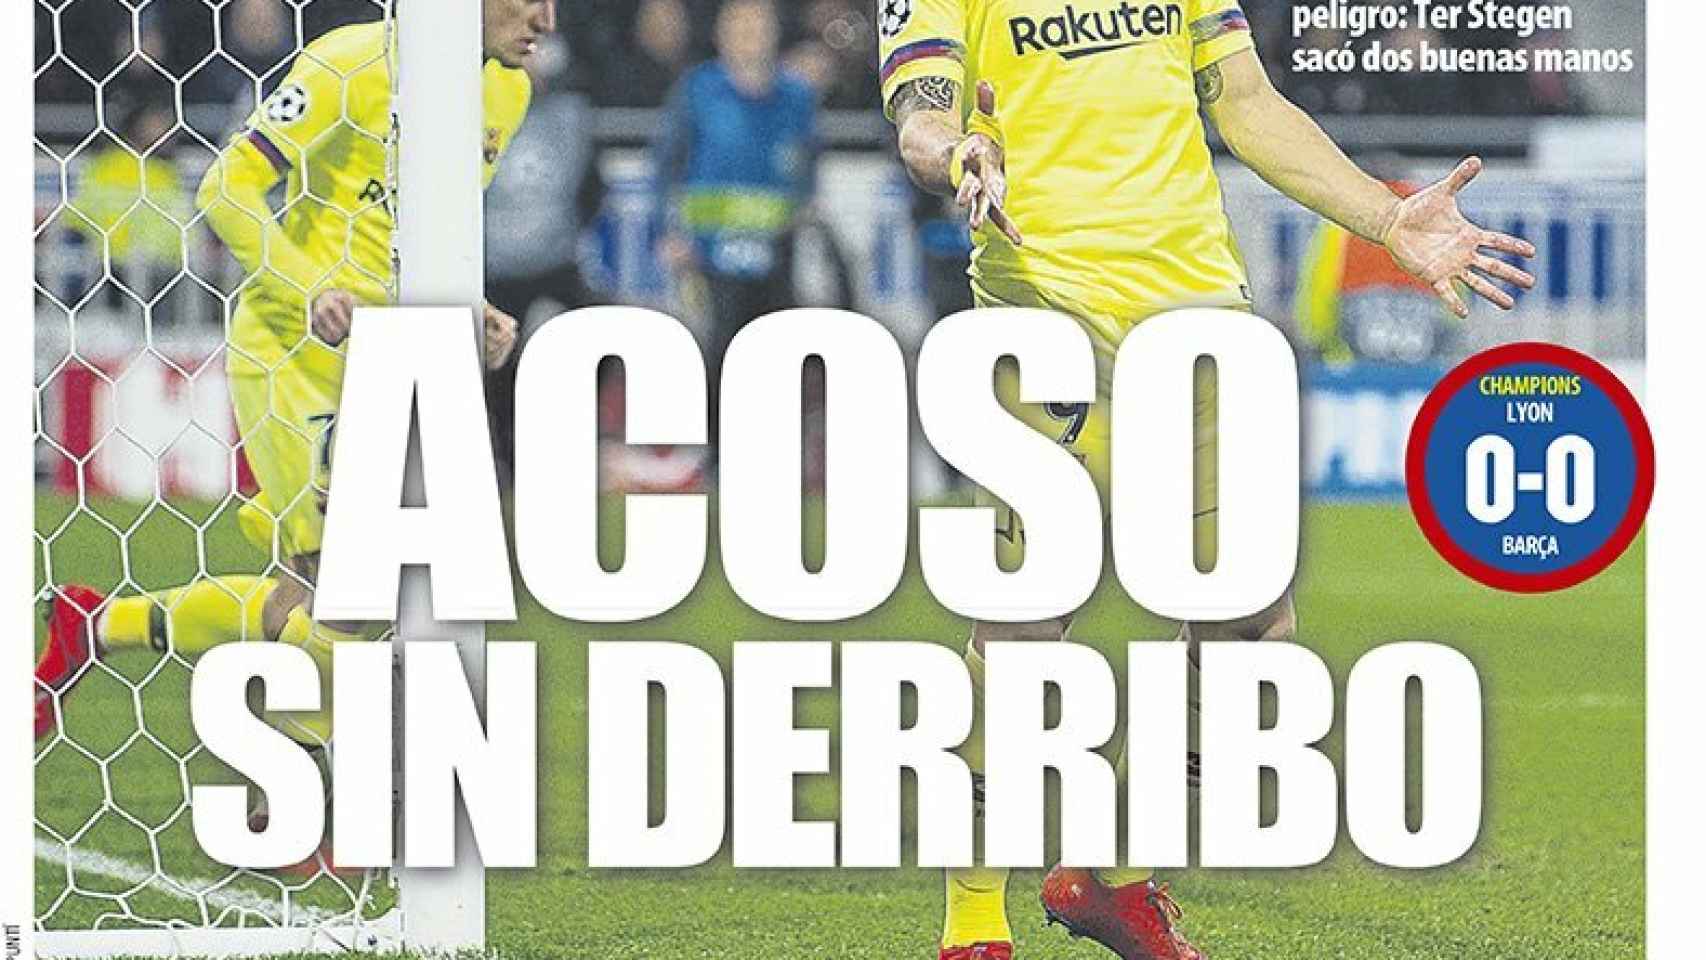 La portada del diario Mundo Deportivo (20/02/2019)